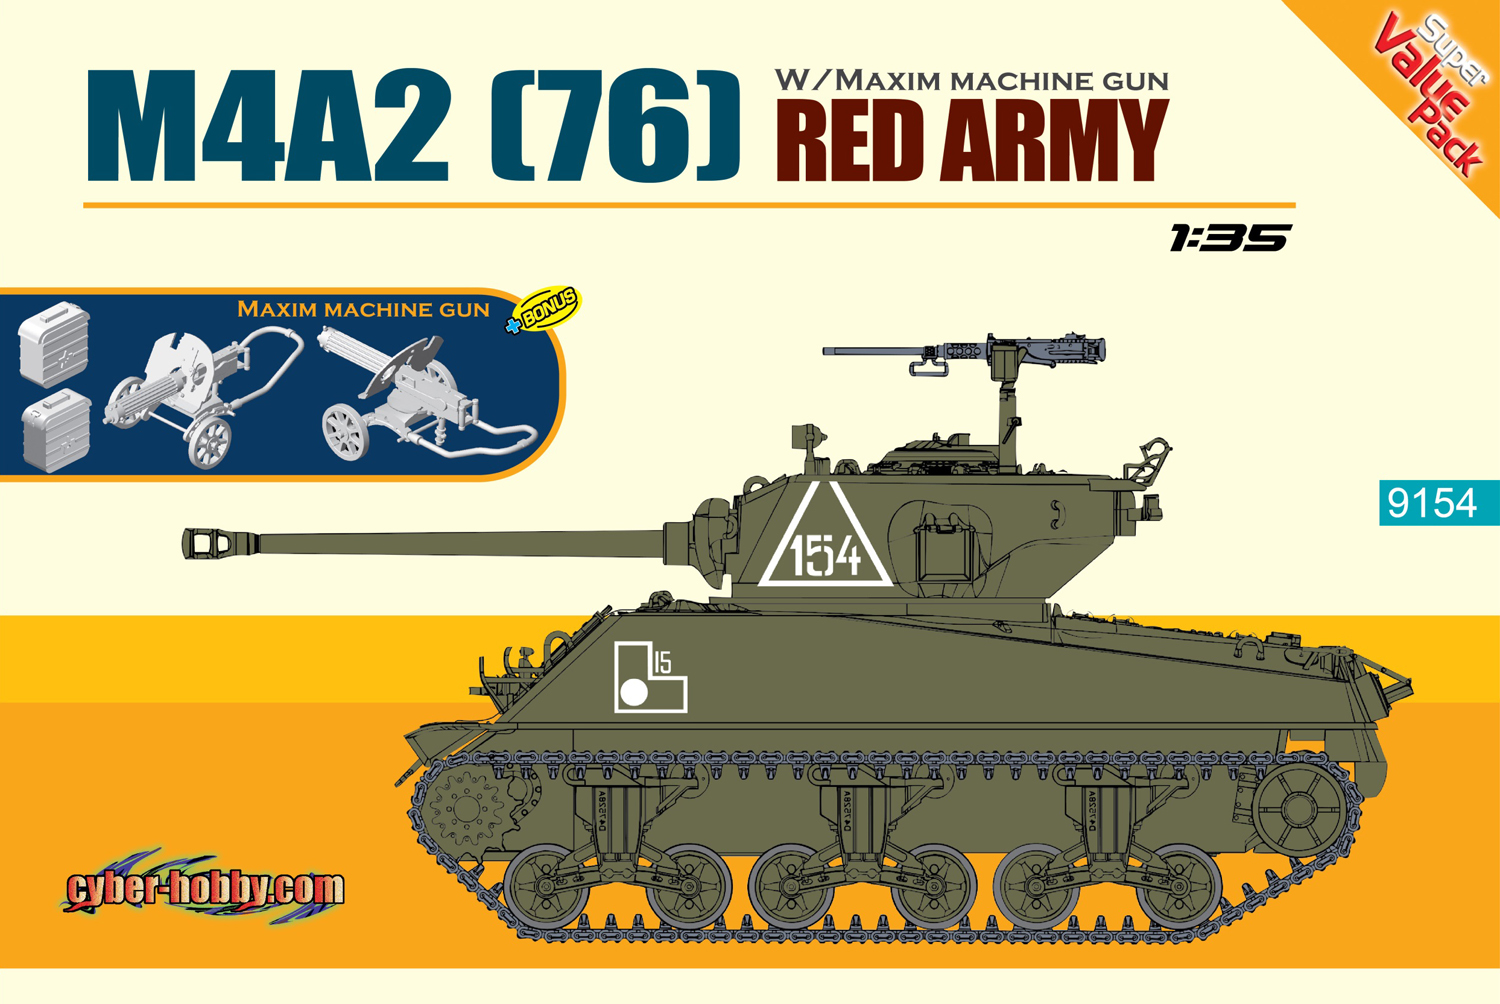 1/35 WW.II ソビエト軍 M4A2(76)シャーマン レッドアーミー - ウインドウを閉じる